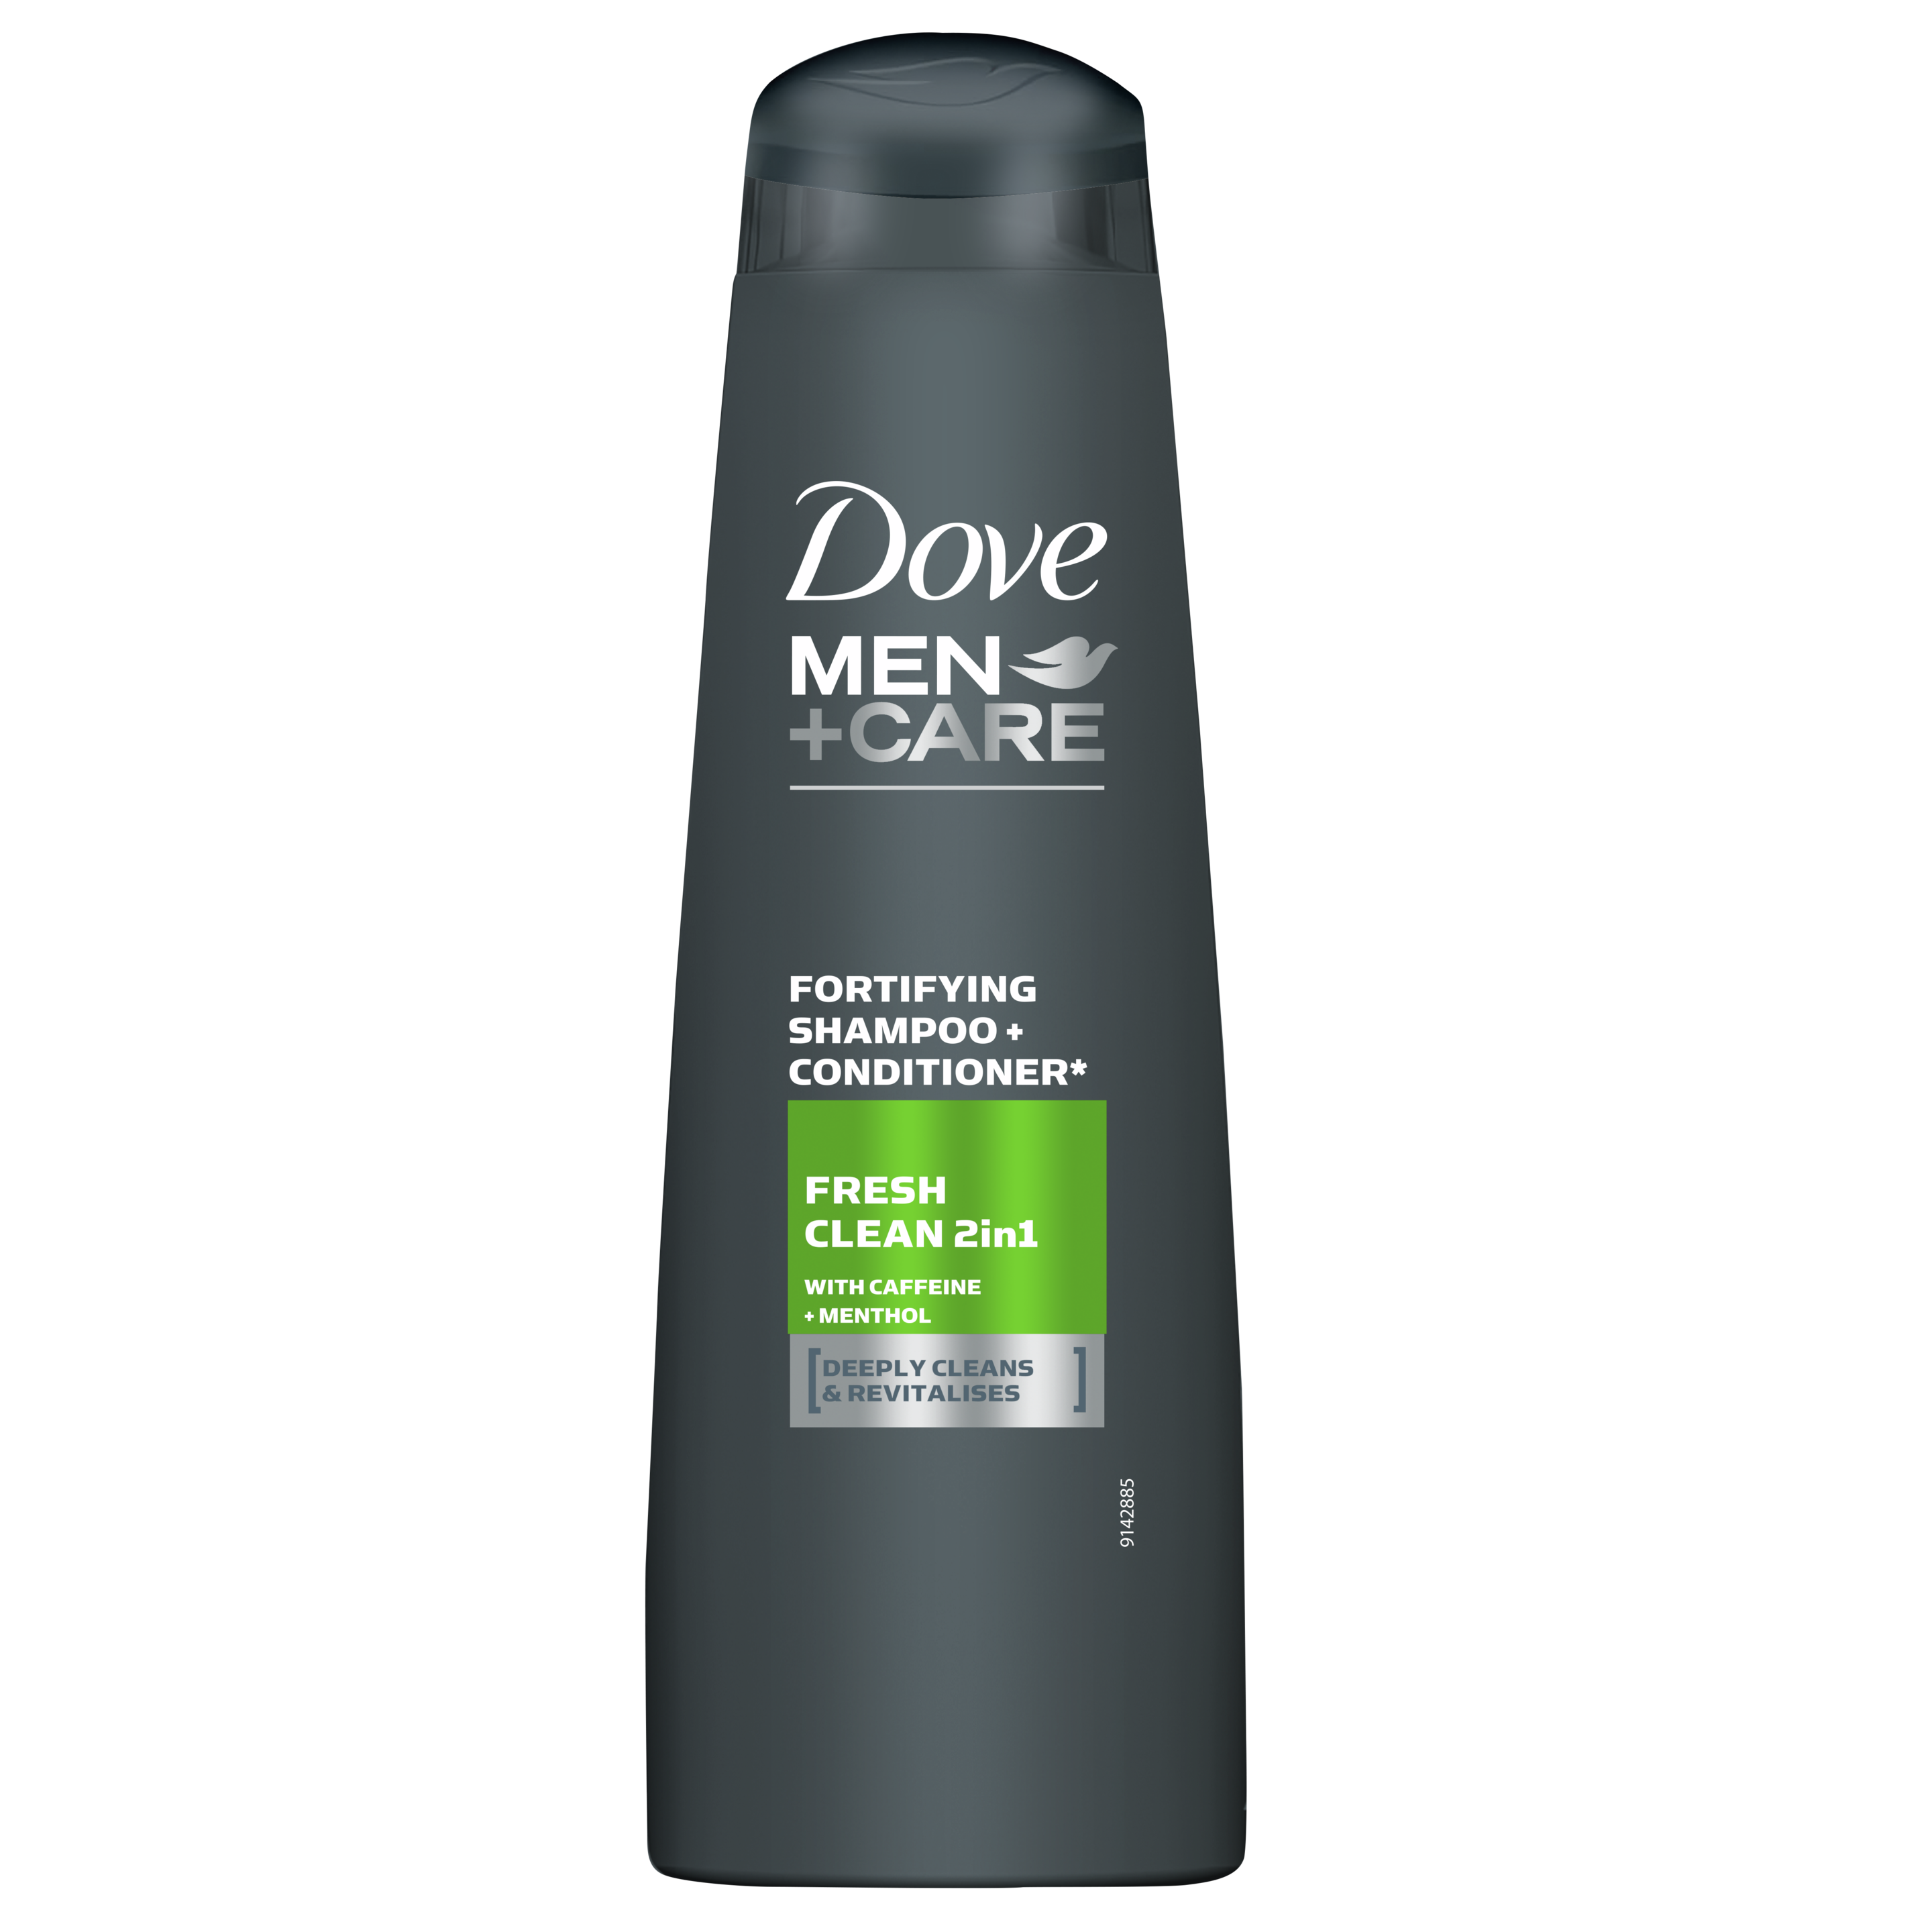 szampon dove dla mężczyzn świąd skory